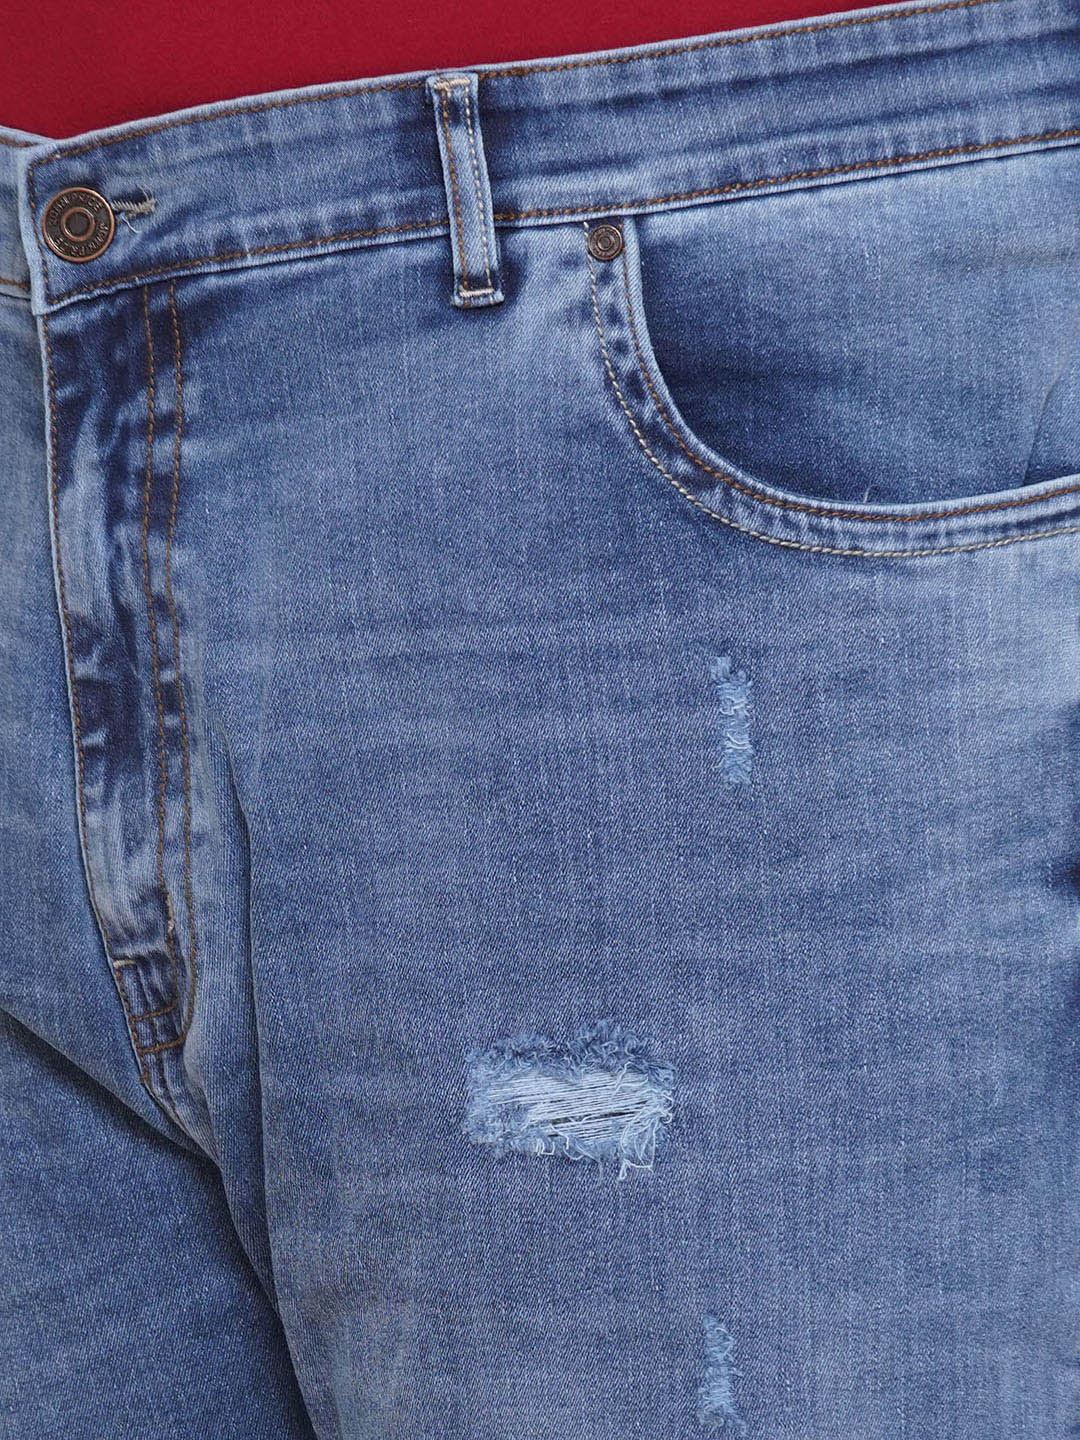 bottomwear/jeans/JPJ12305/jpj12305-2.jpg